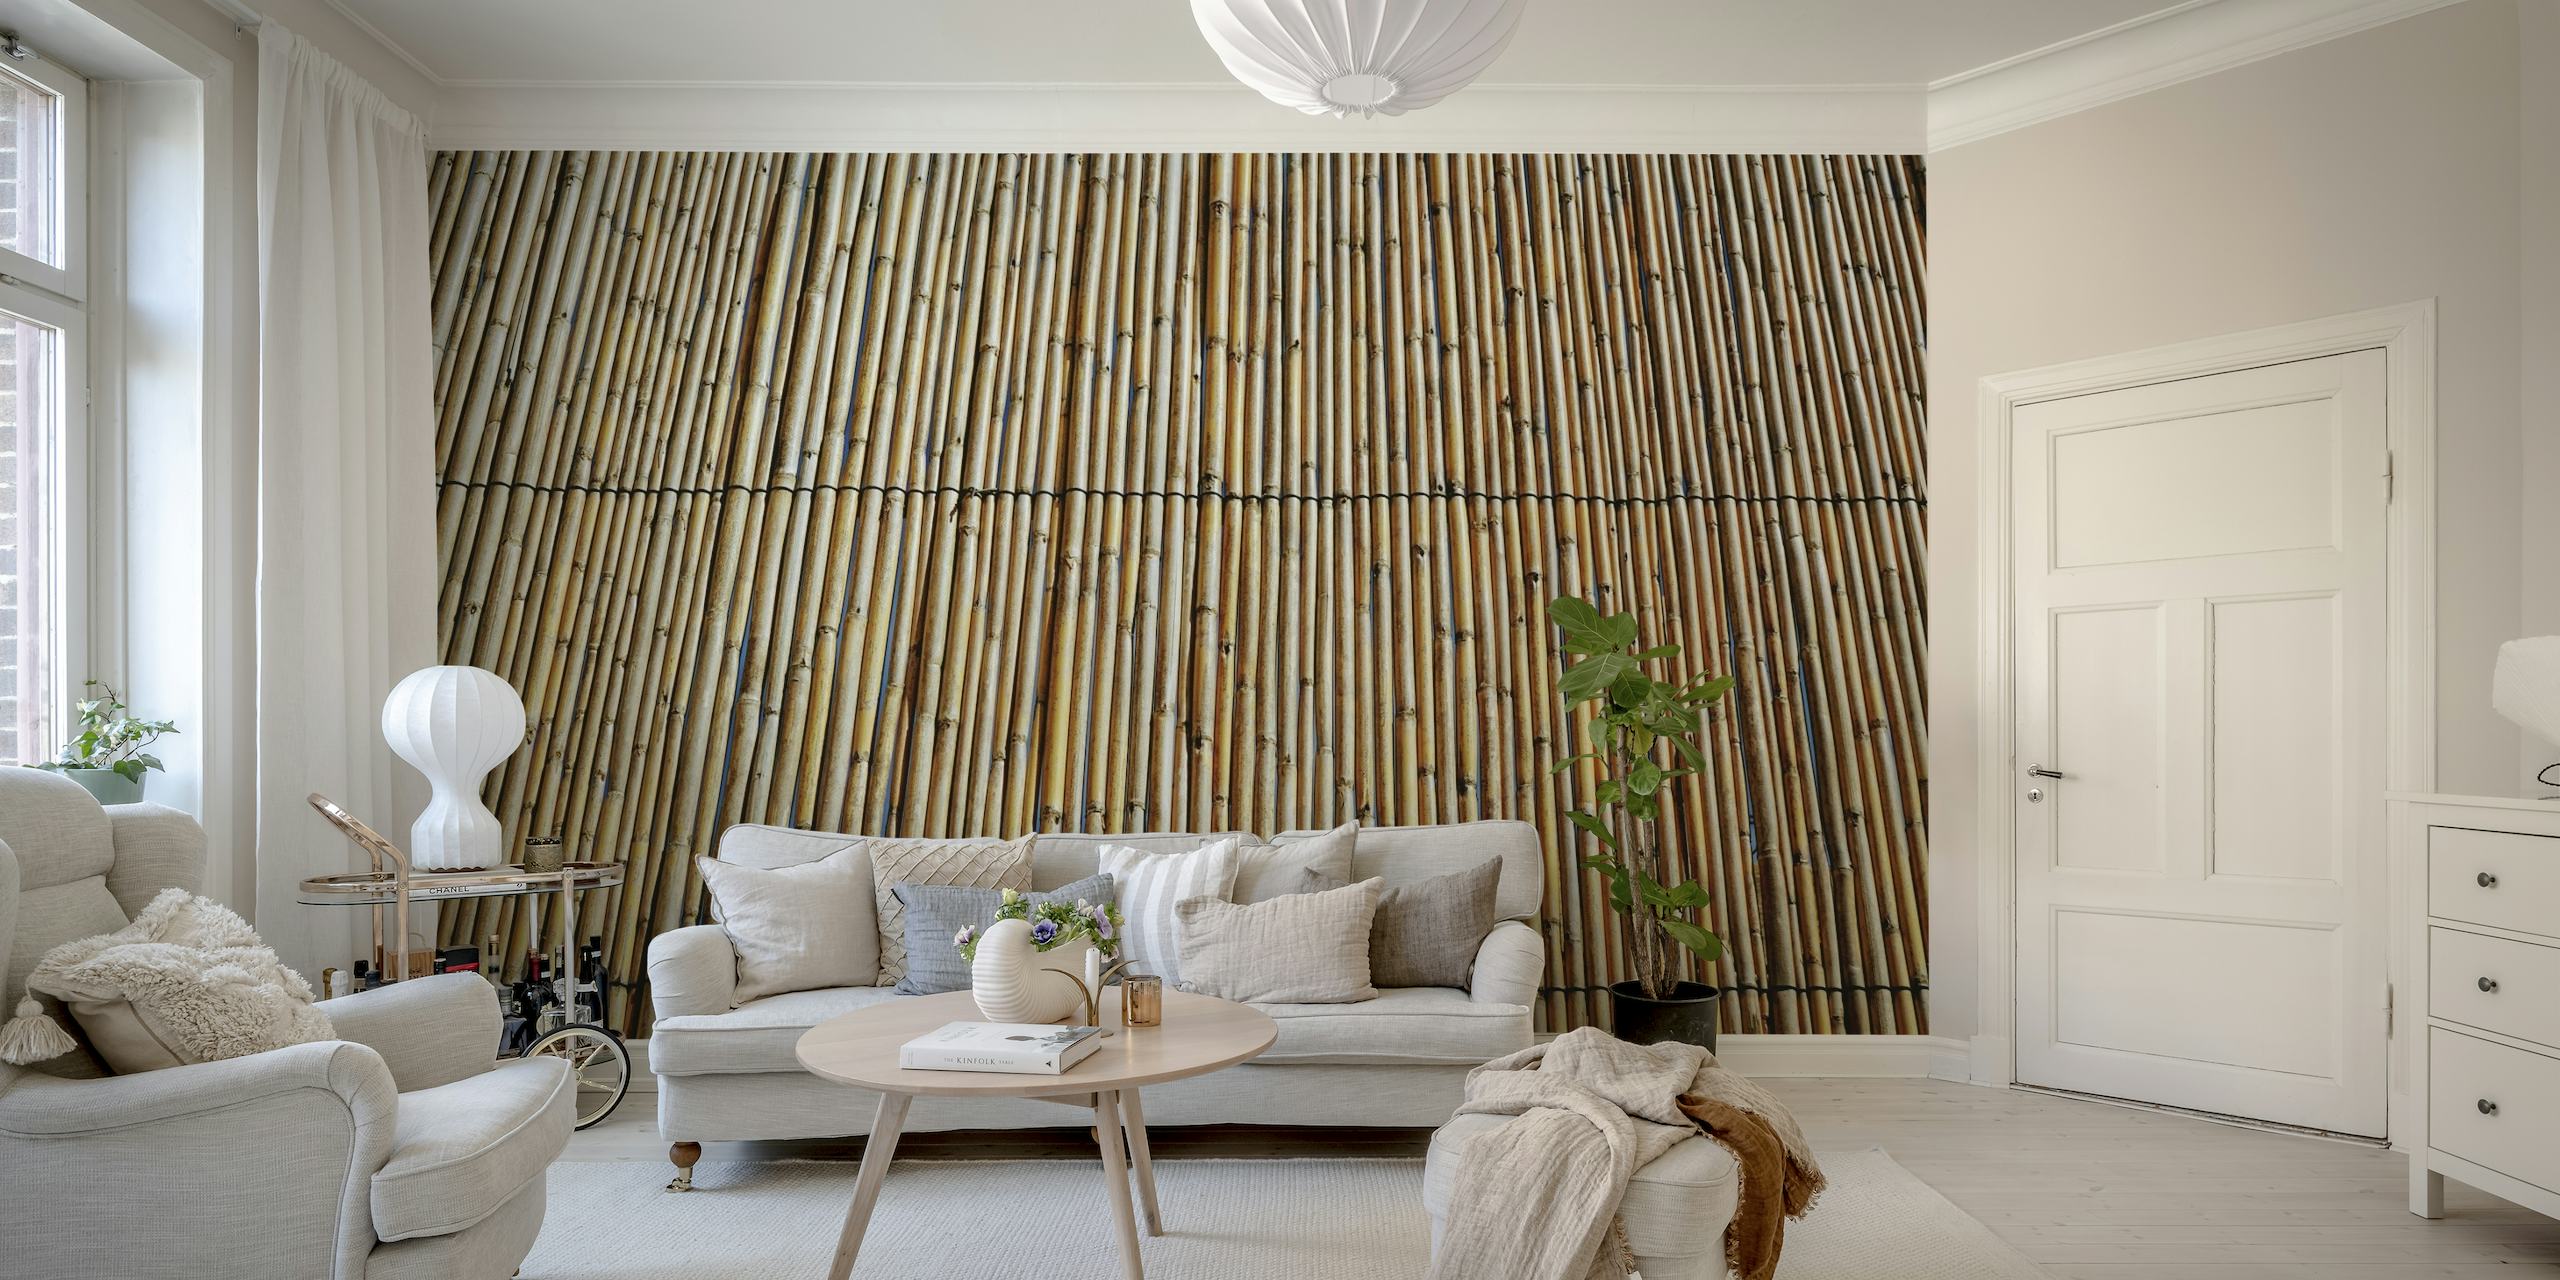 Wooden Bamboo Wall wallpaper